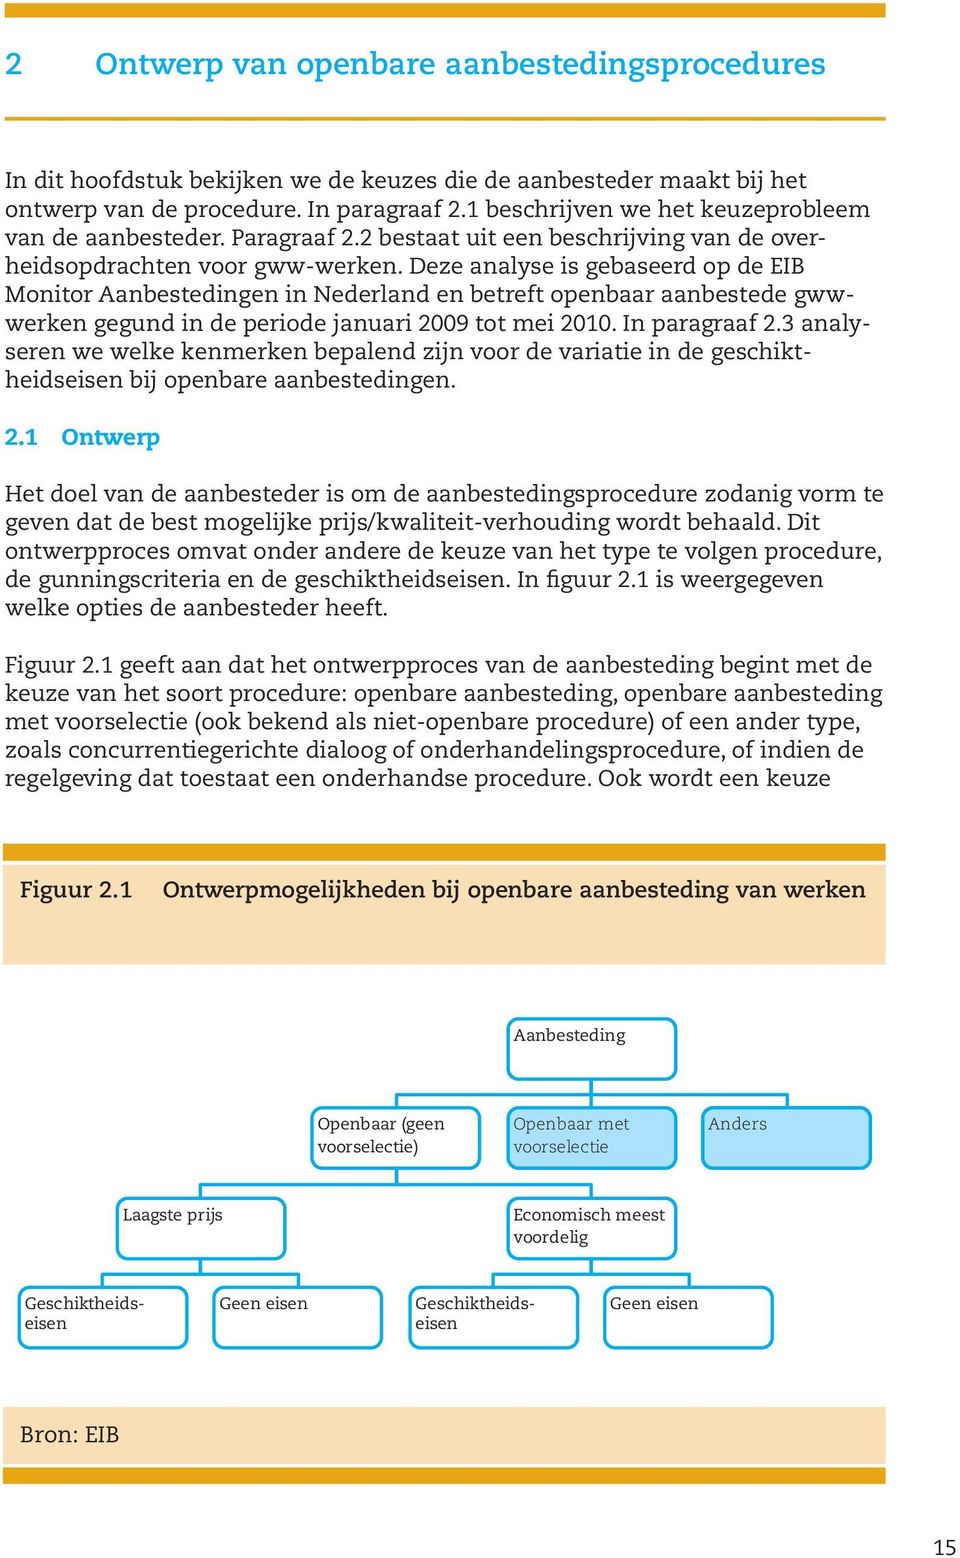 Deze analyse is gebaseerd op de EIB Monitor Aanbestedingen in Nederland en betreft openbaar aanbestede gwwwerken gegund in de periode januari 2009 tot mei 2010. In paragraaf 2.